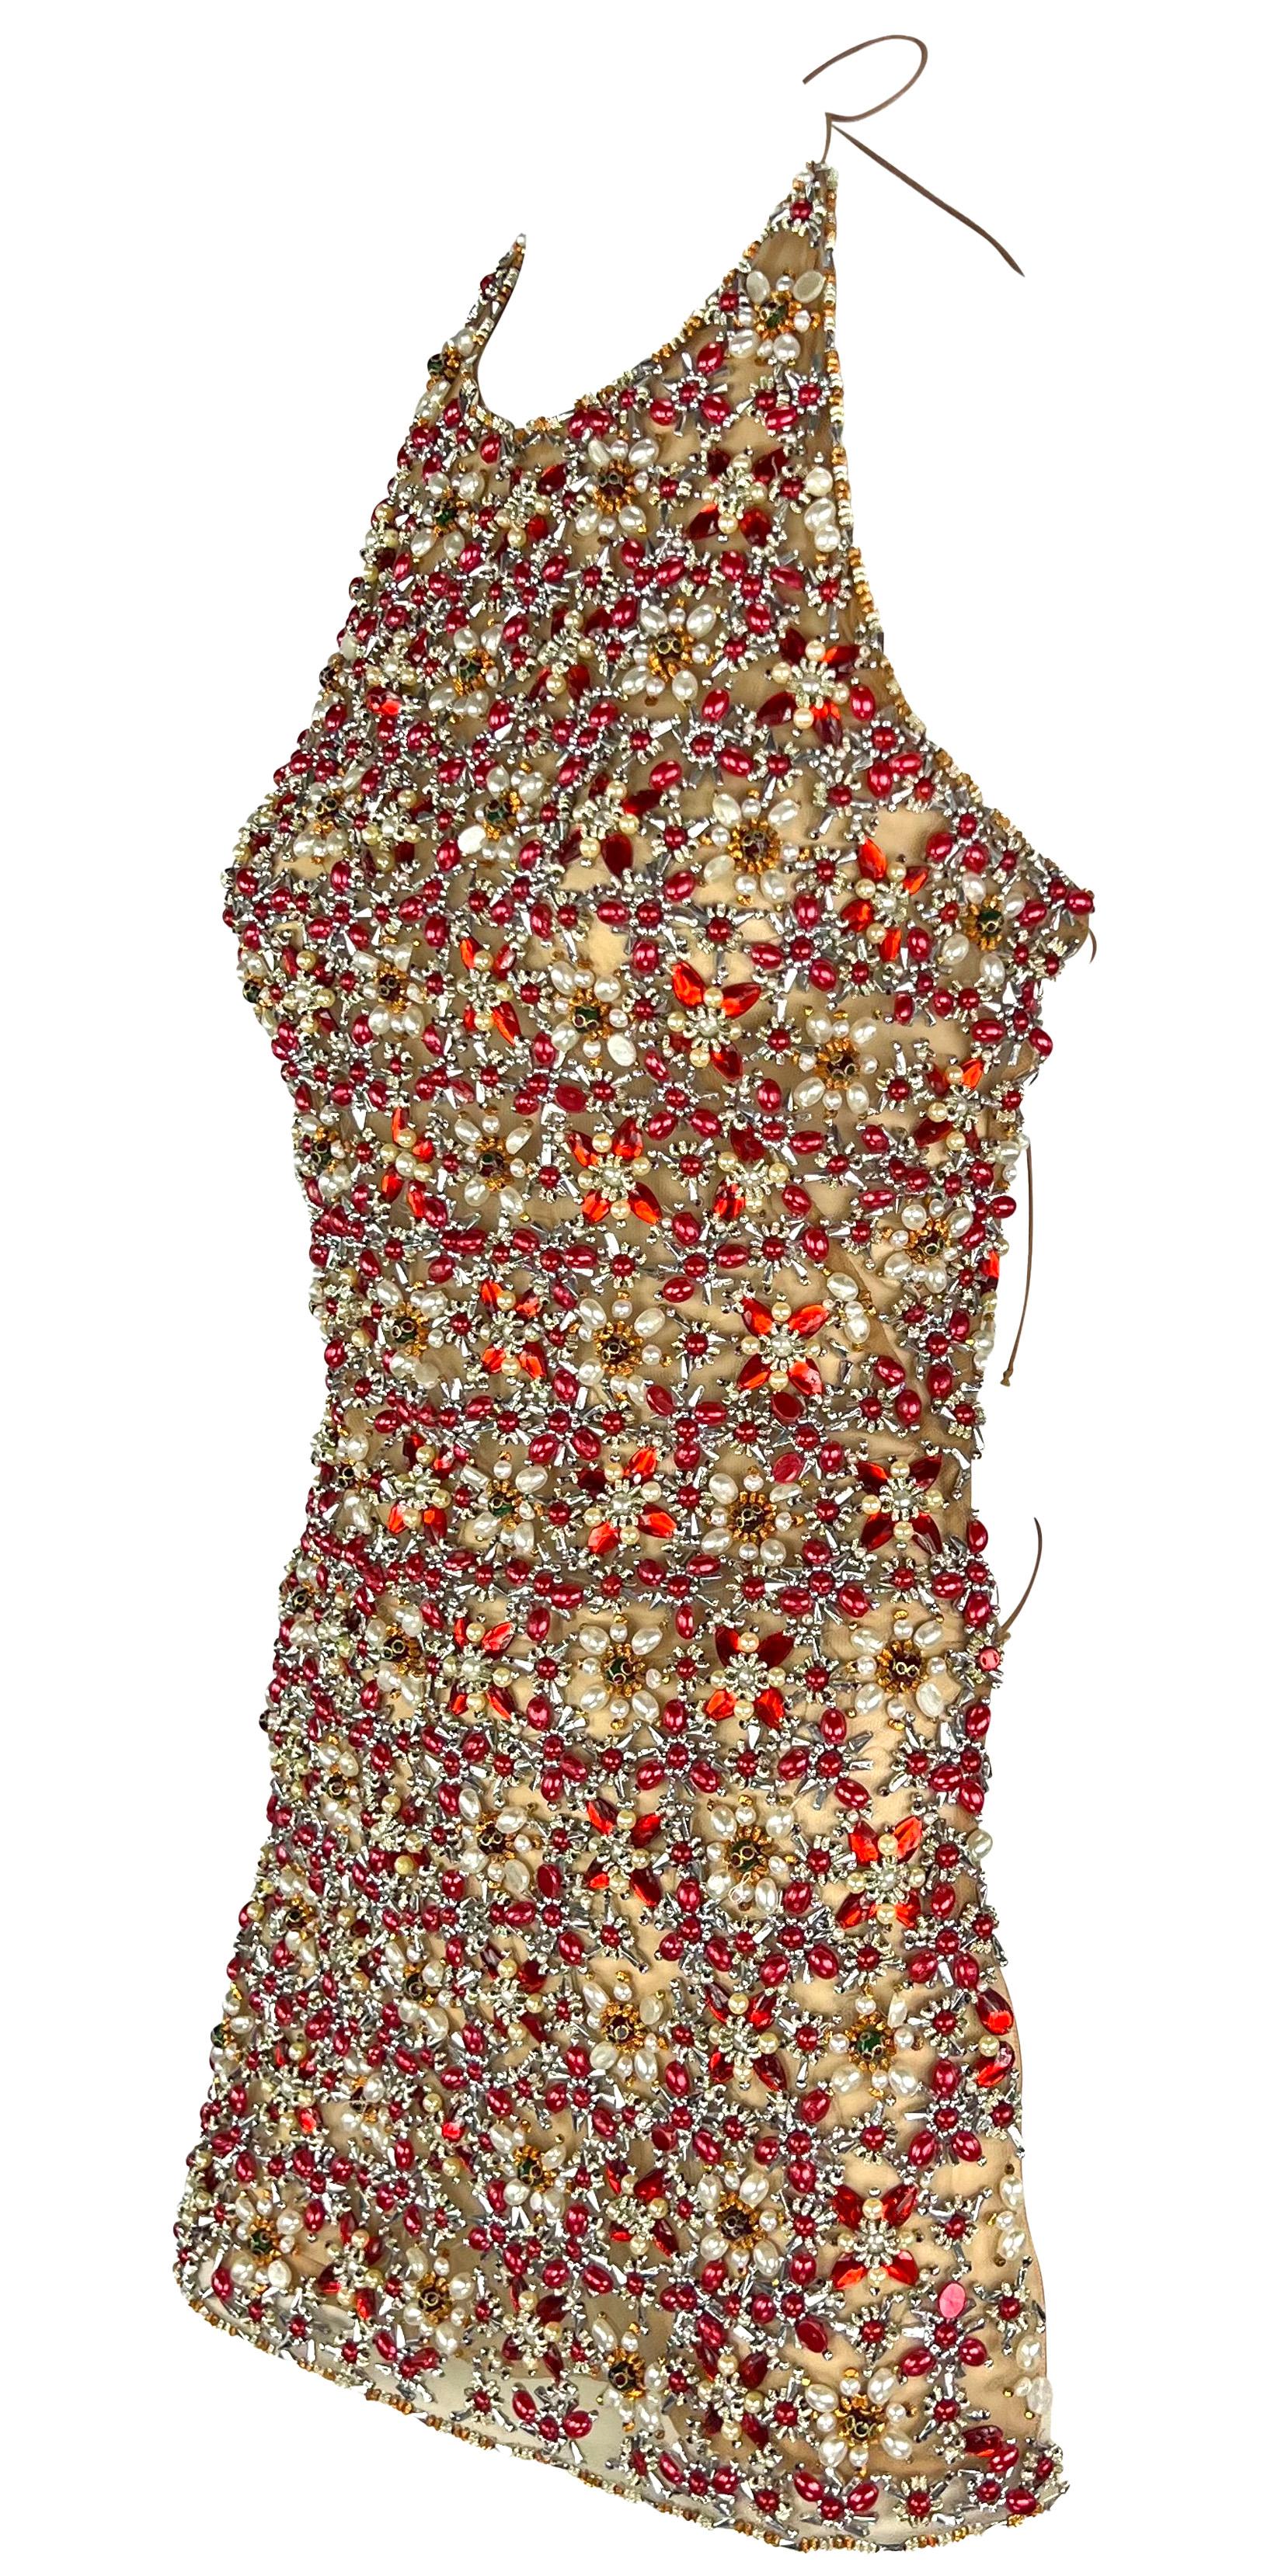 S/S 2006 Gianfranco Ferré Durchsichtige Kunstperlen Perlen Beige Rückenfreies Krawatten-Top Bluse Damen im Angebot